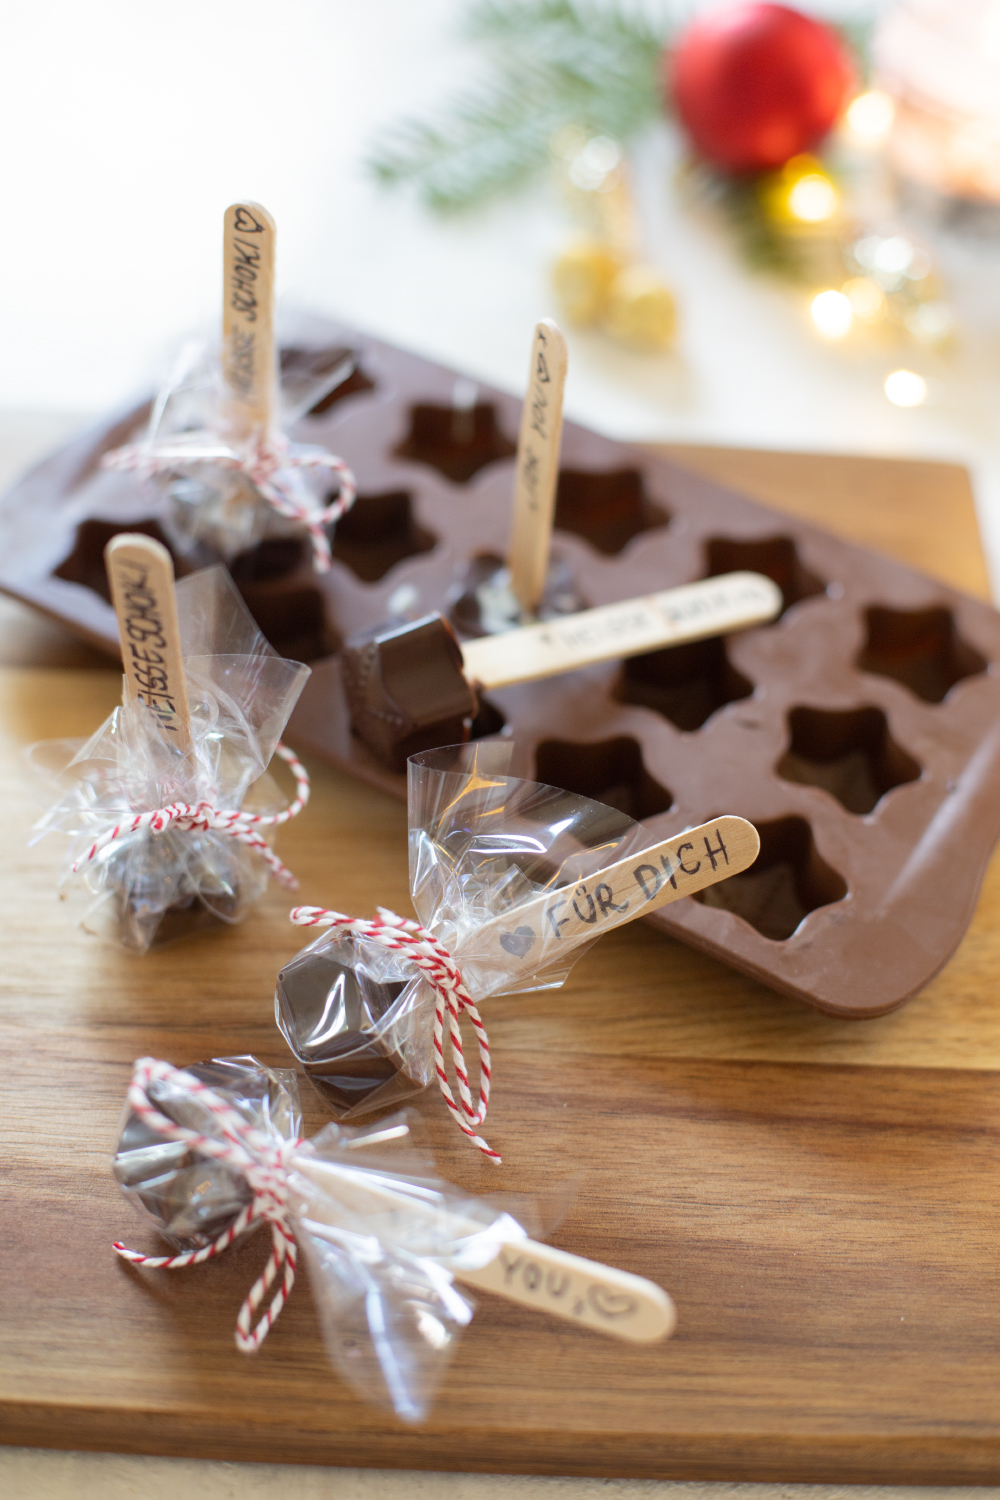 DIY Geschenk: Schokolade am Stiel (für heiße Schokolade)